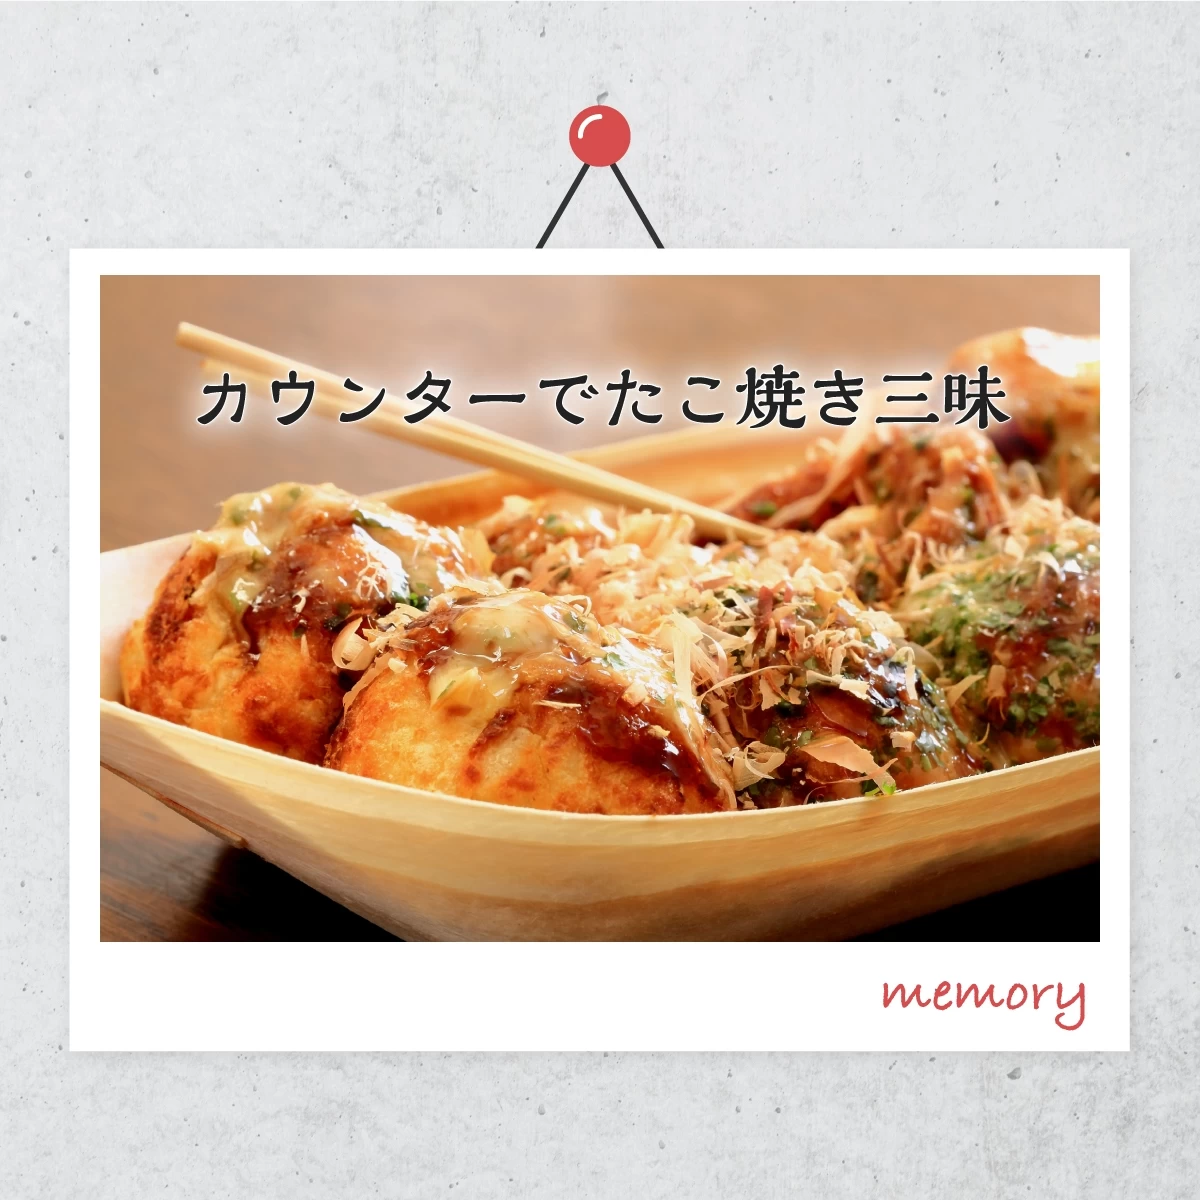 新梅田食道街で安くておいしい“大阪グルメ”を食べ歩き♪